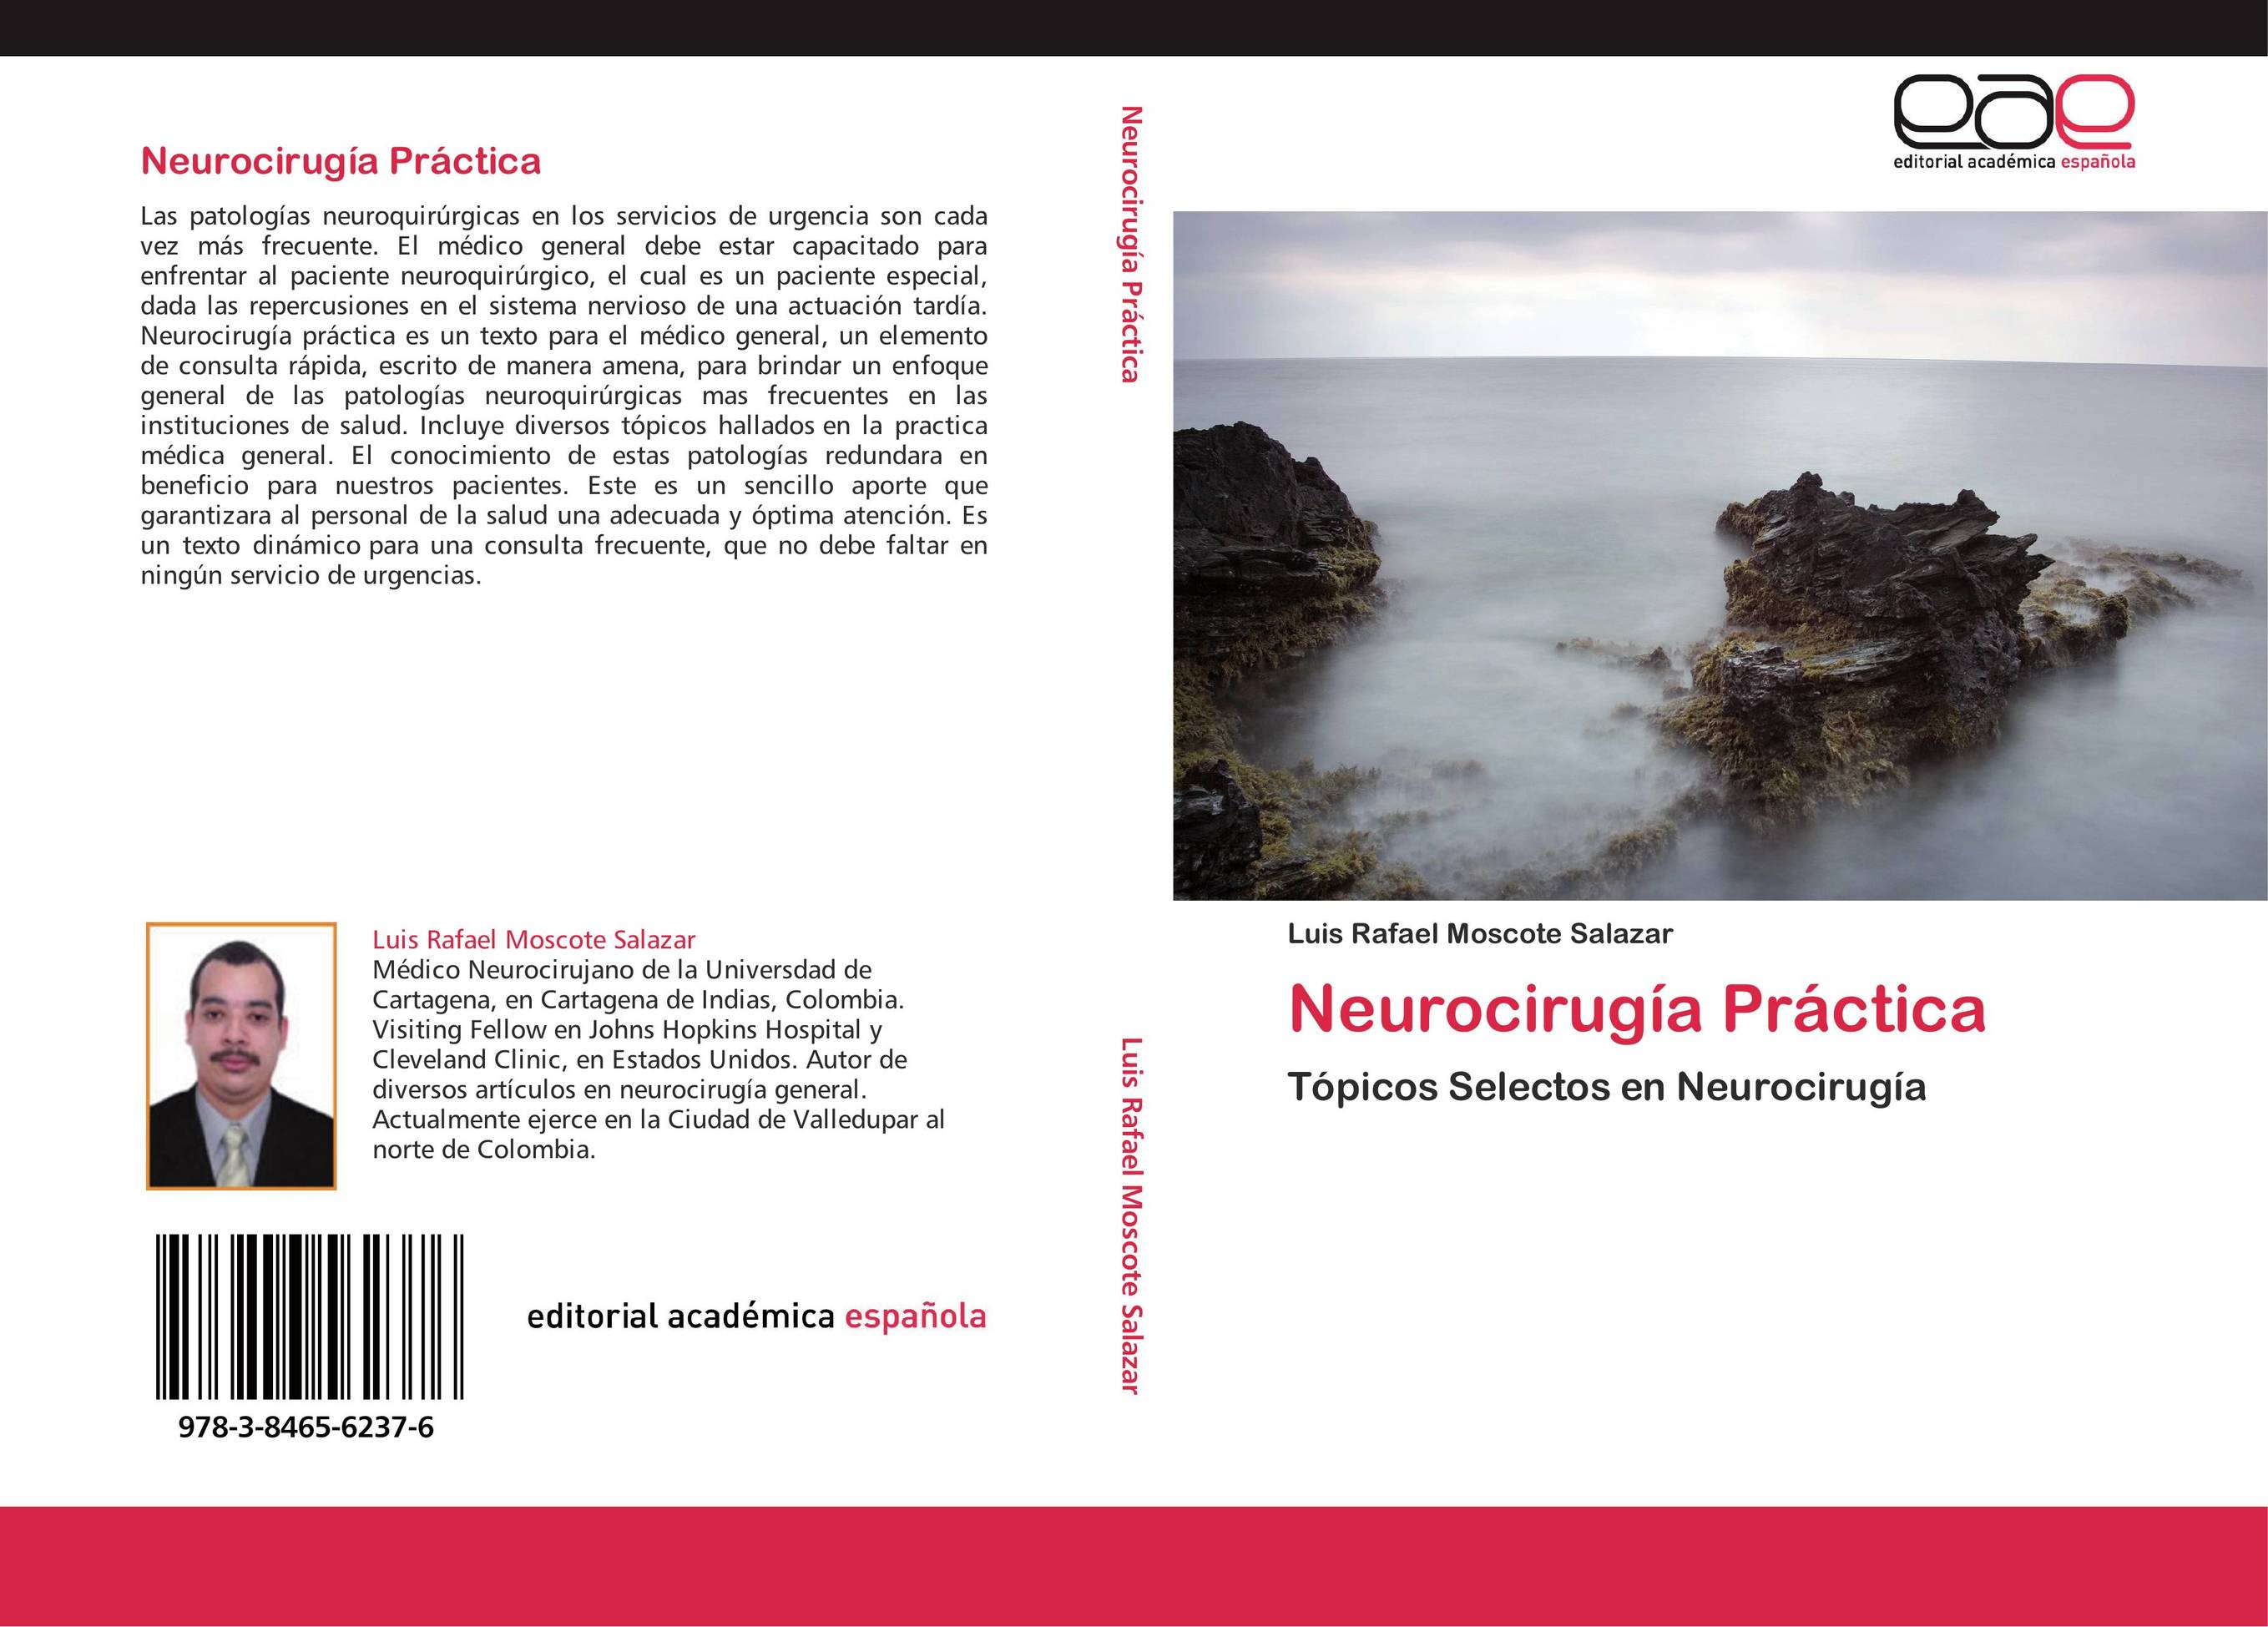 Neurocirugía Práctica